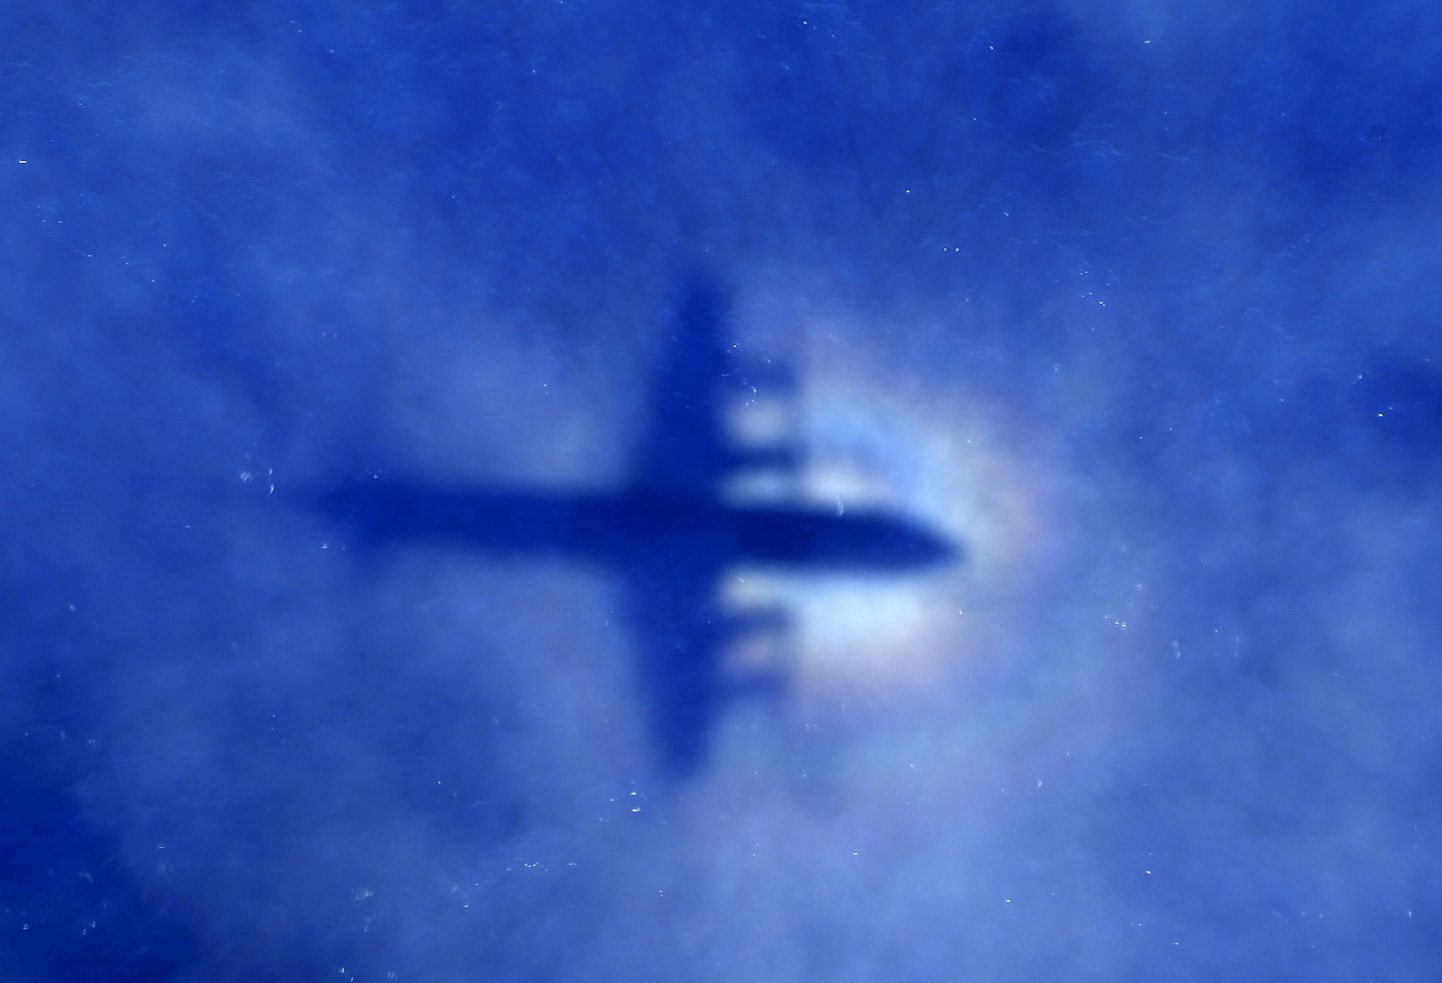 Boeing авиакомпании "Малайзийские авиалинии" при загадочных обстоятельствах бесследно исчез в начале марта 2014 года.